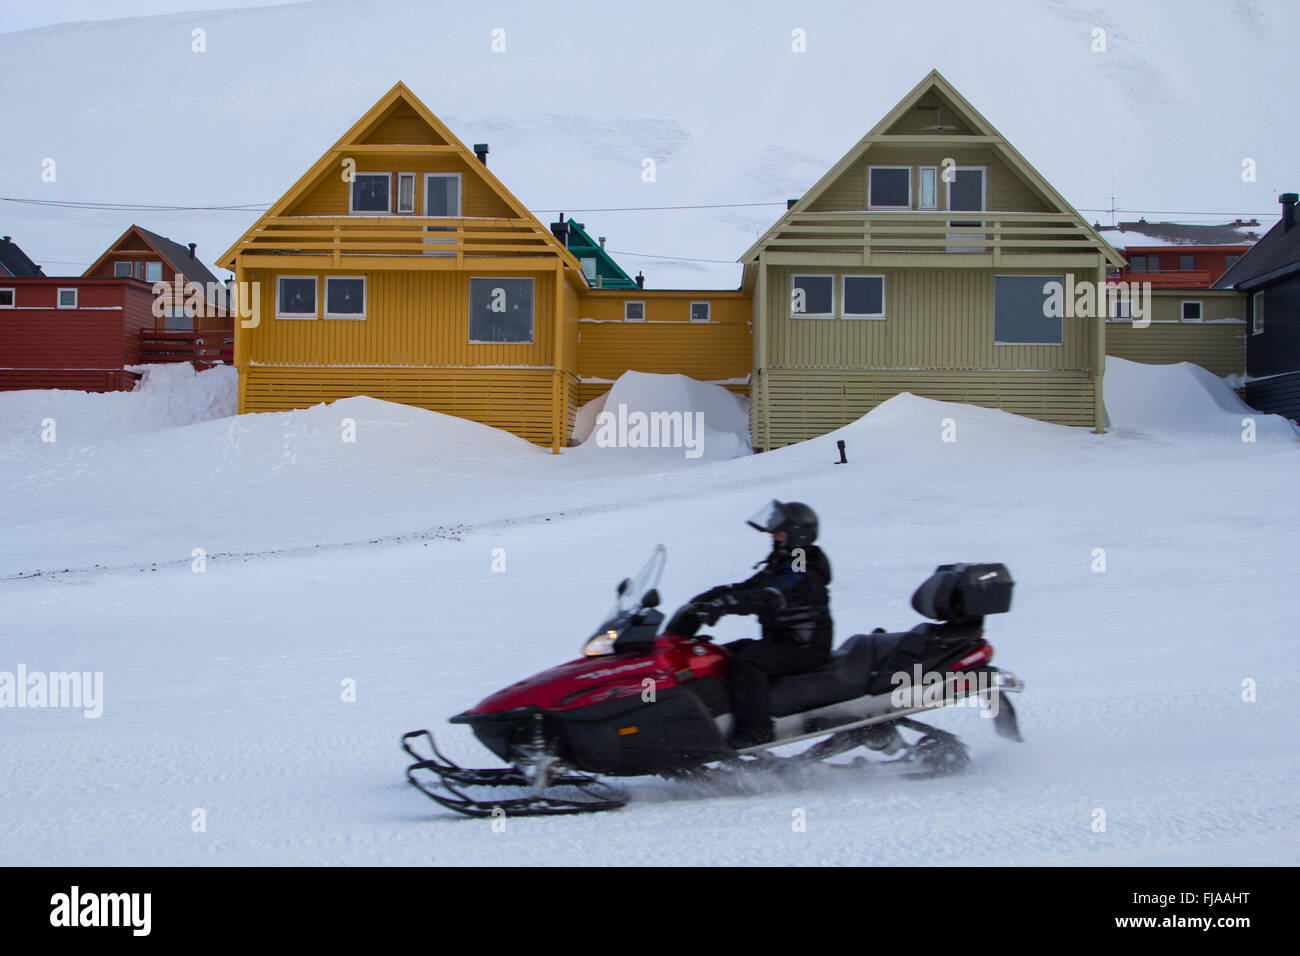 Eine Stadt-Details von Longyearbyen - die nördlichste Siedlung der Welt. Spitzbergen (Svalbard), Norwegen. Stockfoto